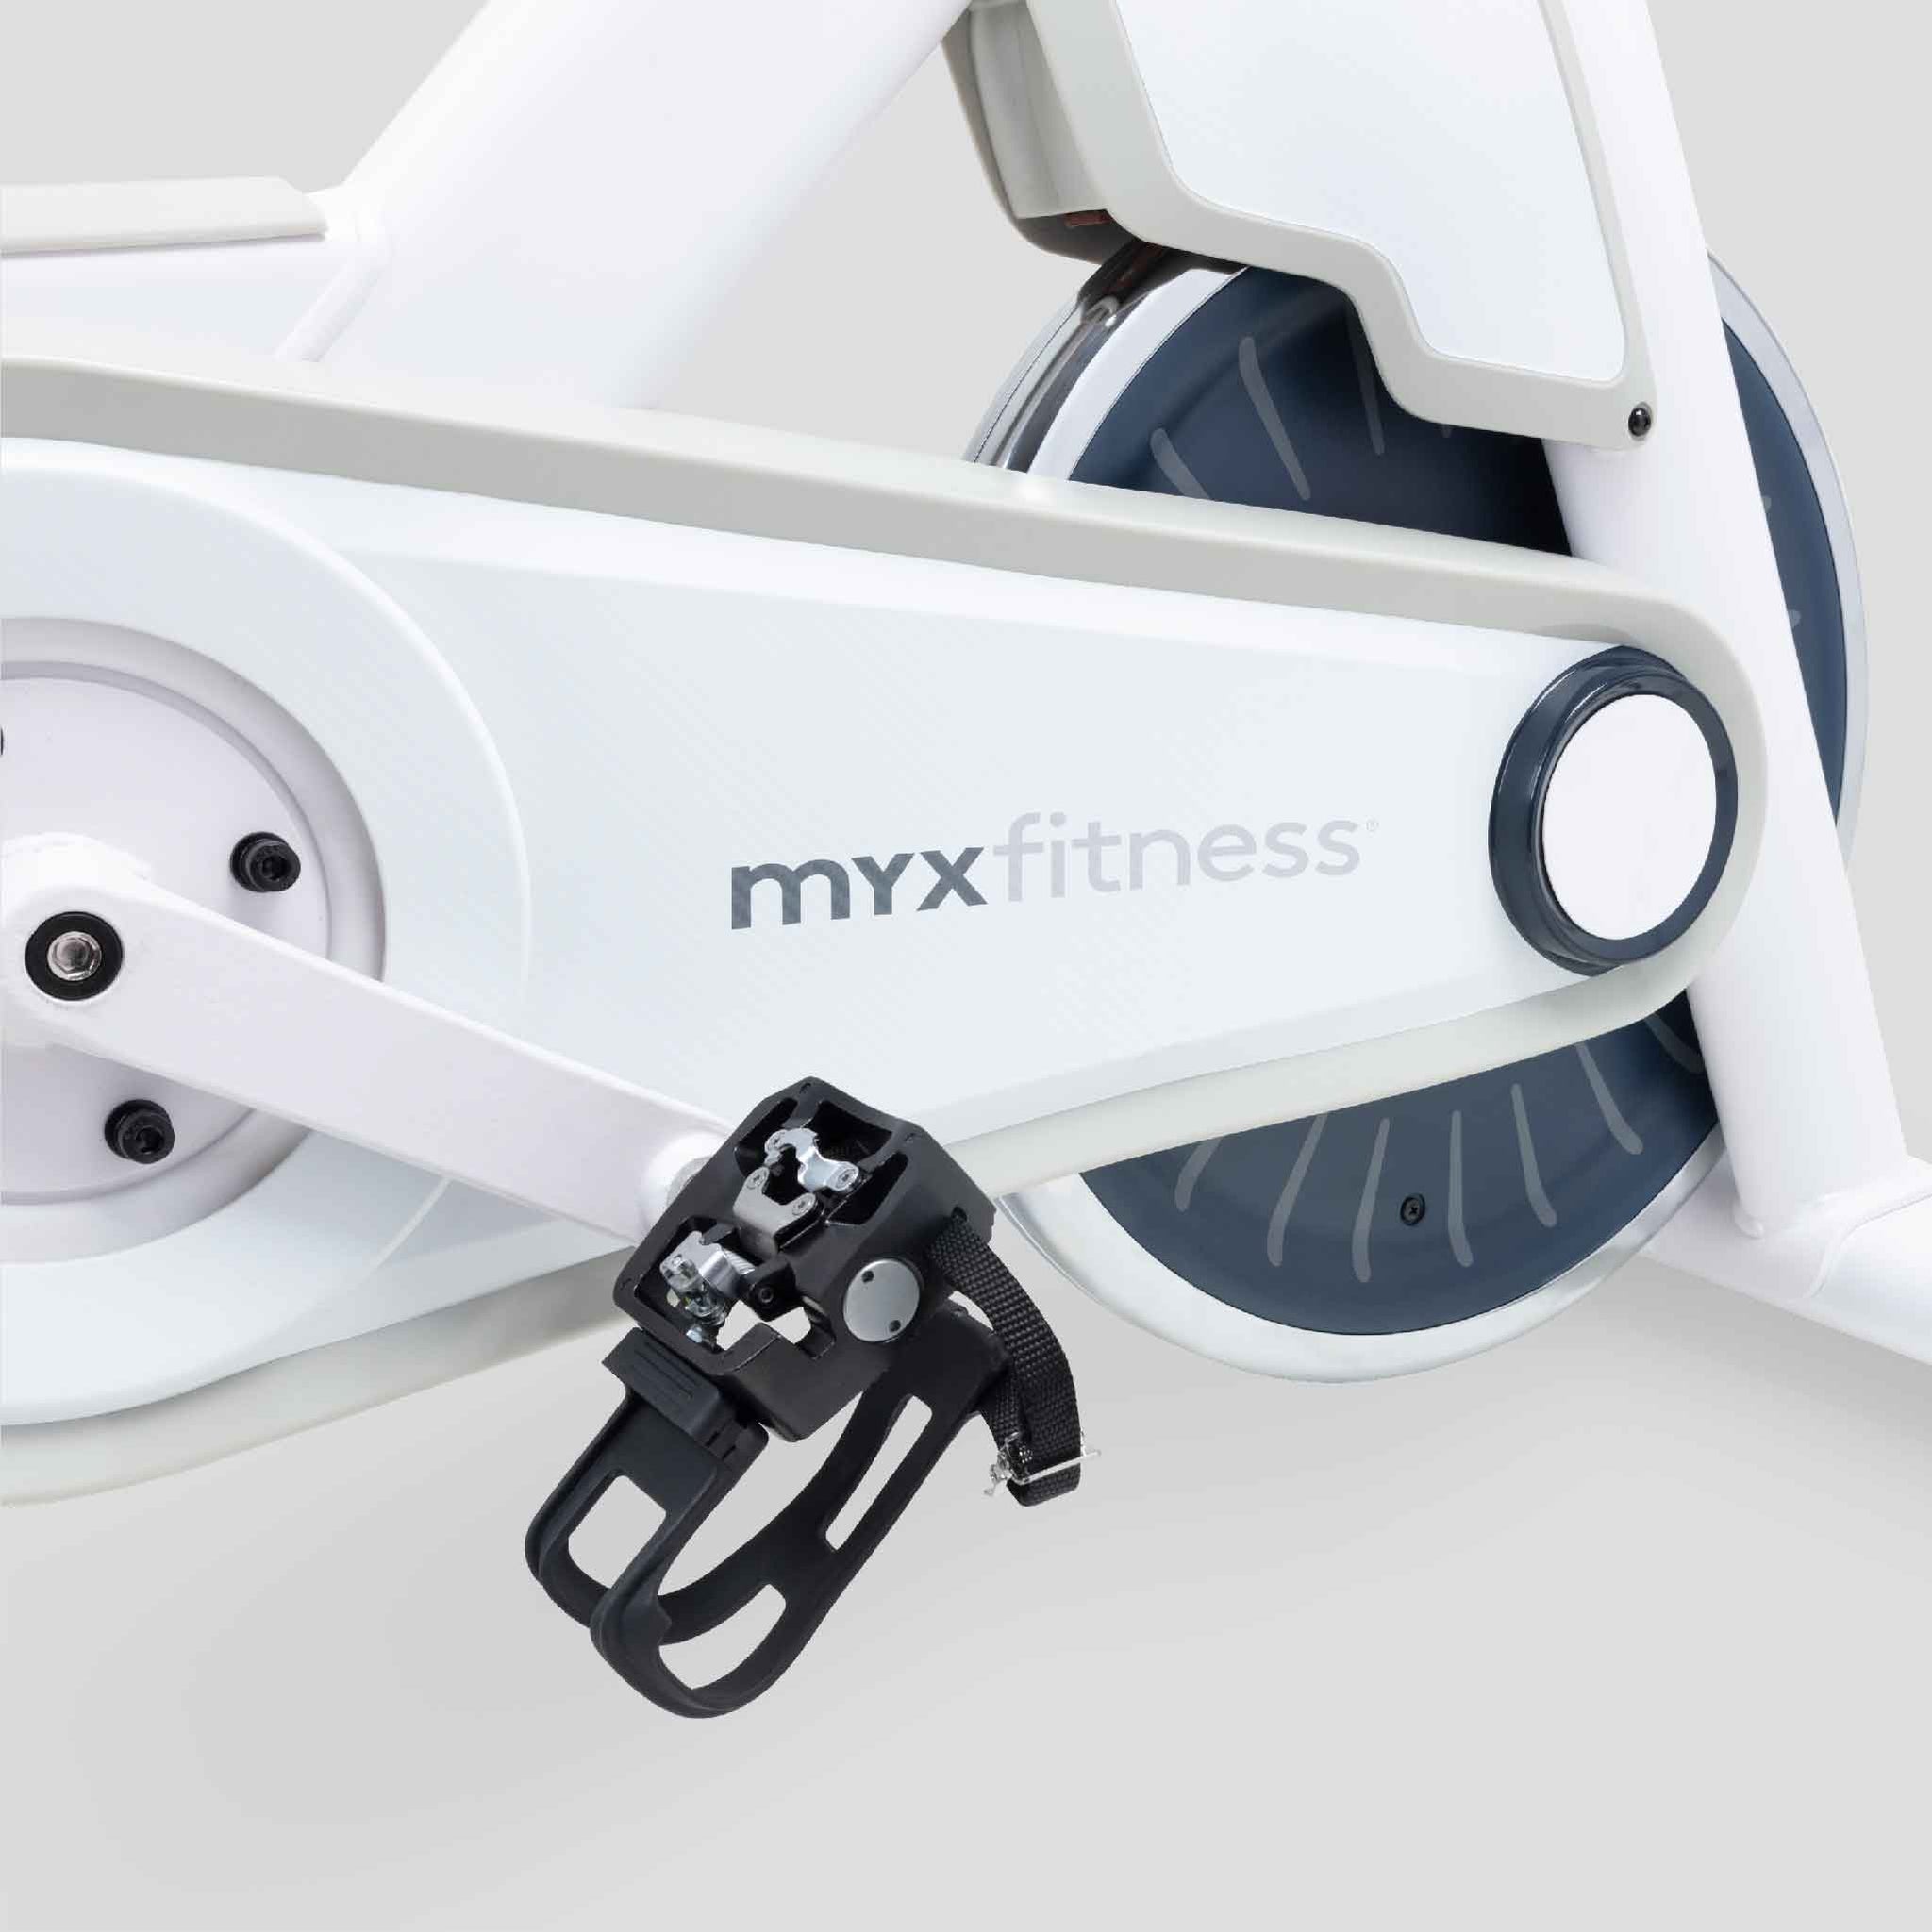 the myx bike